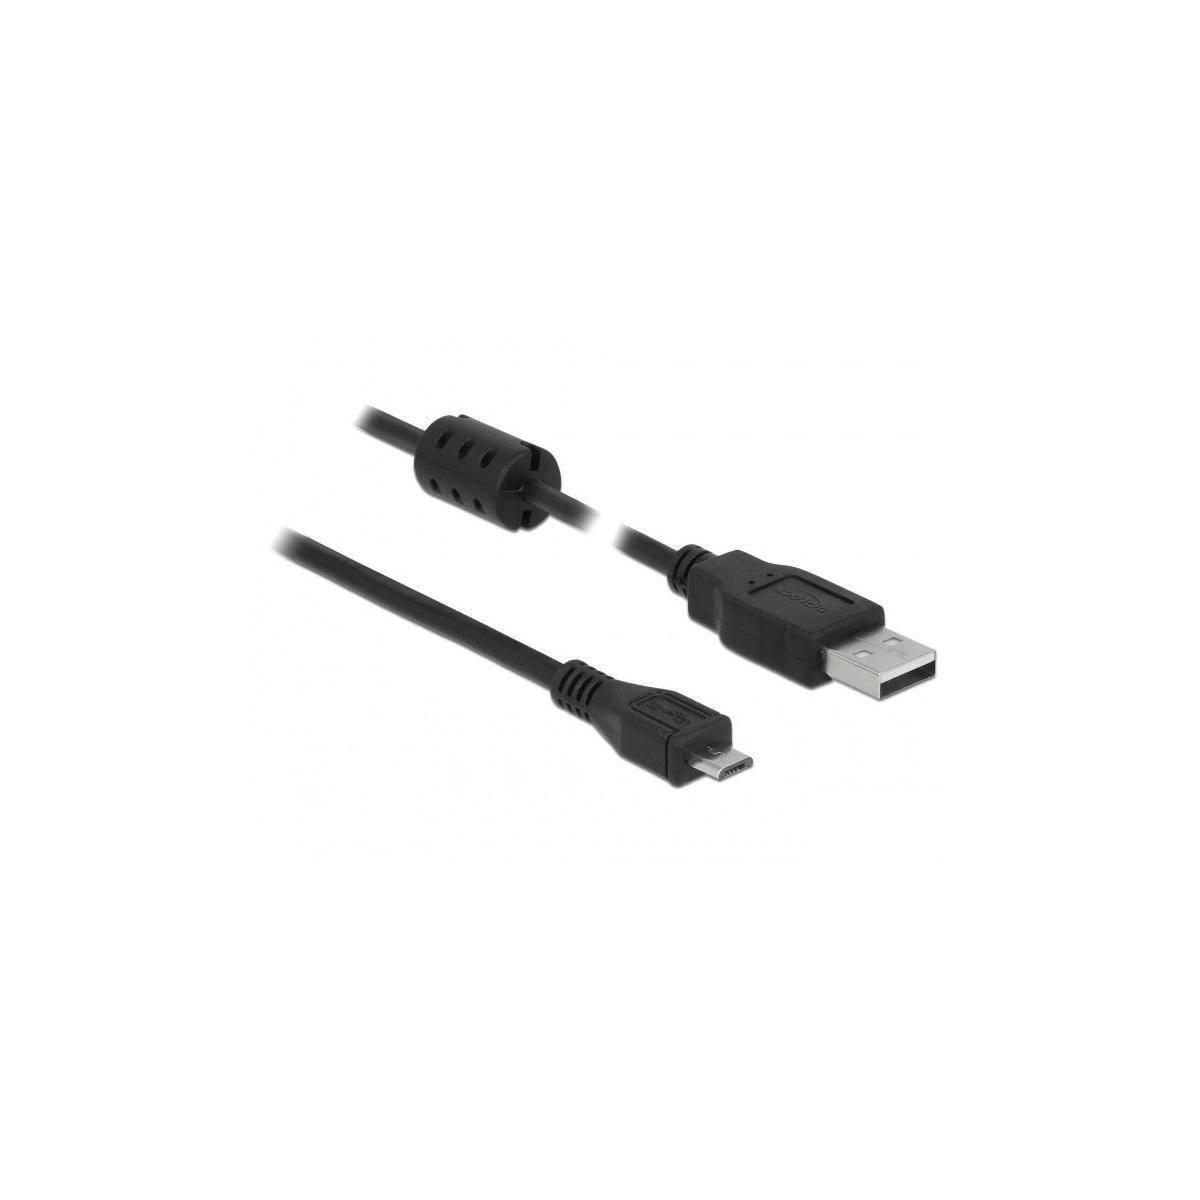 DELOCK Schwarz 2.0 Zubehör Kabel, m 5,0 USB USB Typ-A<gt/>Micro-B DELOCK Peripheriegeräte & Kabel